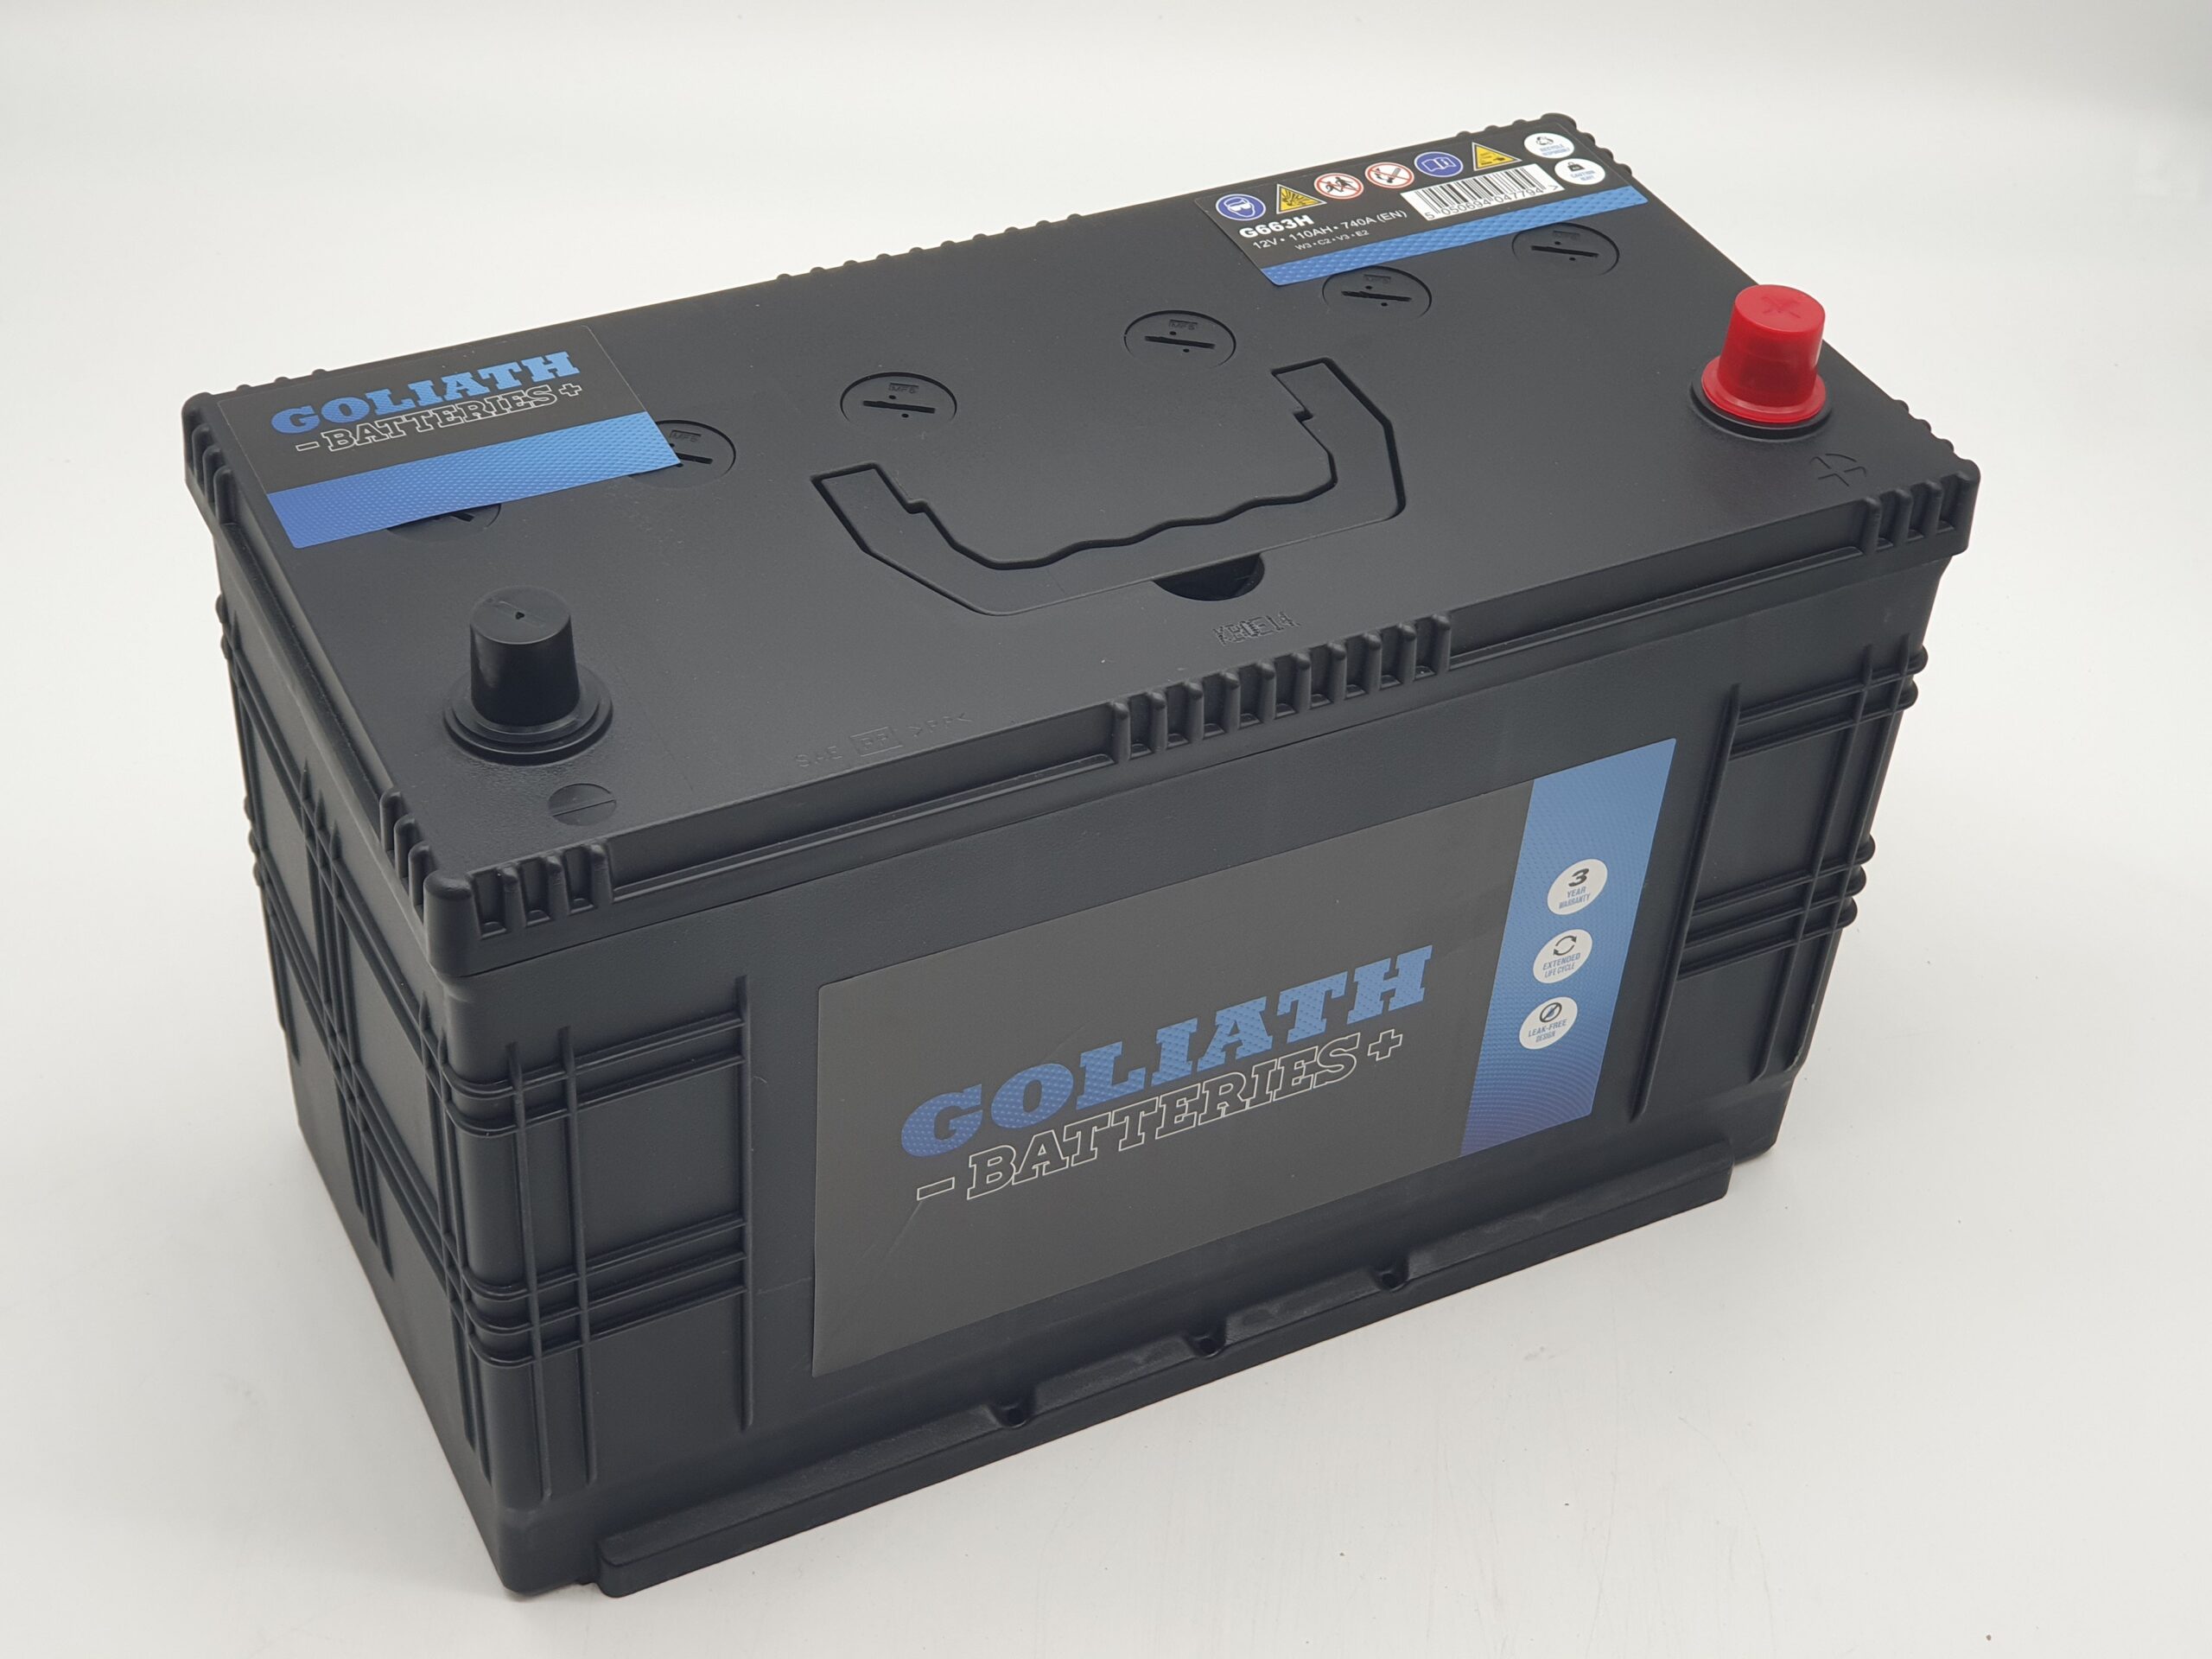 Goliath G663H – 663H 110Ah 740A Battery – 3 Year Warranty